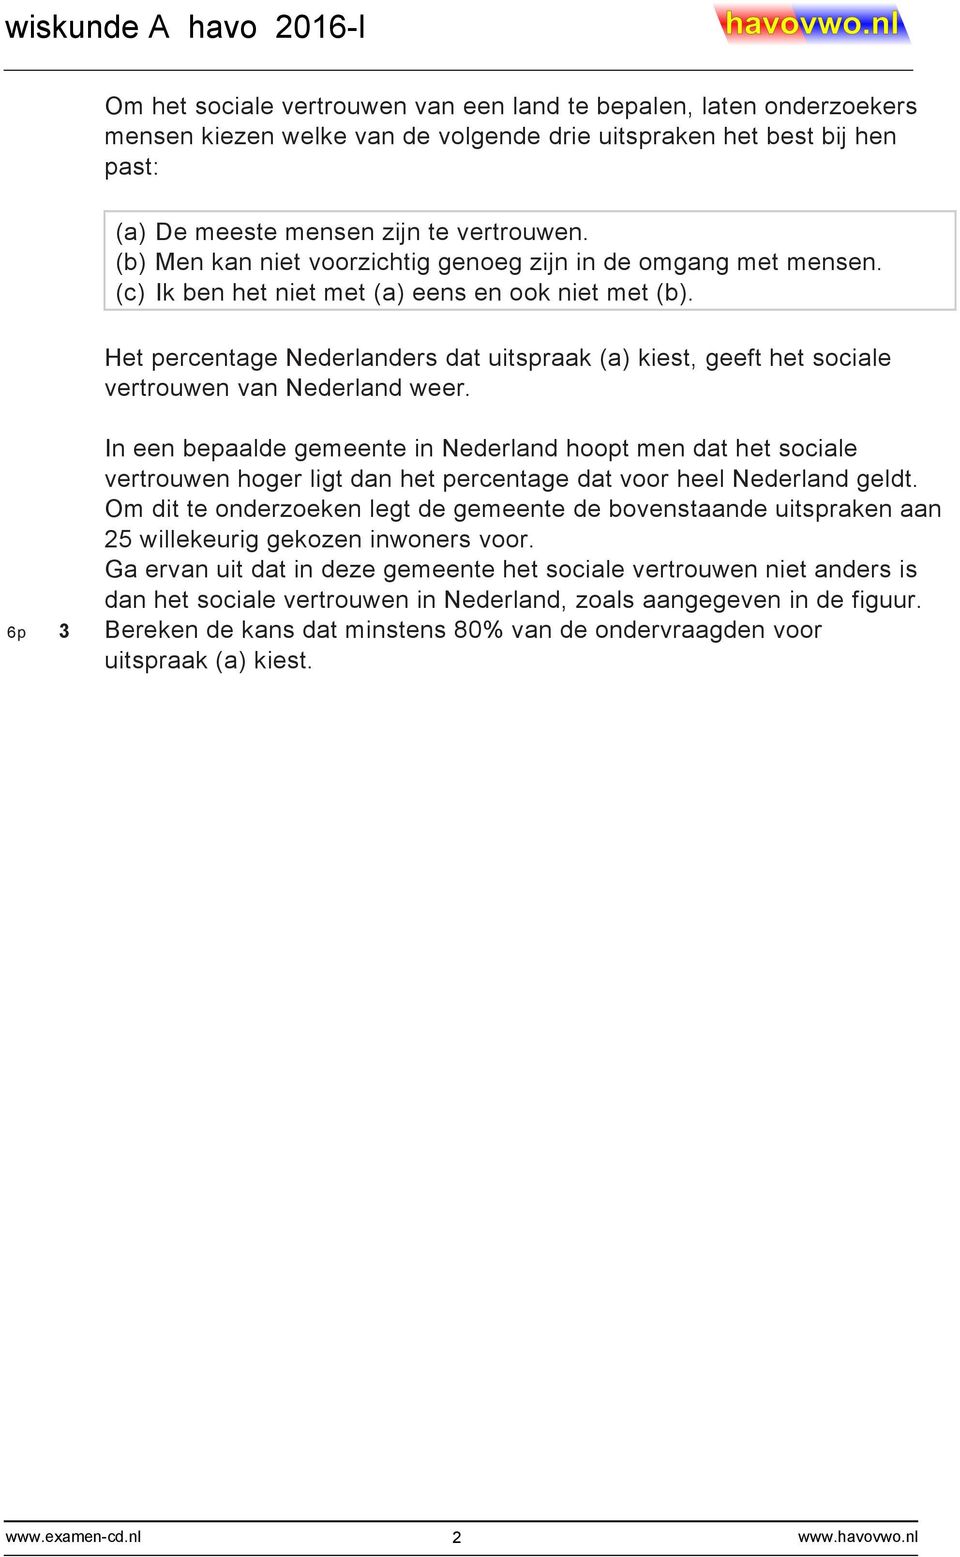 Het percentage Nederlanders dat uitspraak (a) kiest, geeft het sociale vertrouwen van Nederland weer.